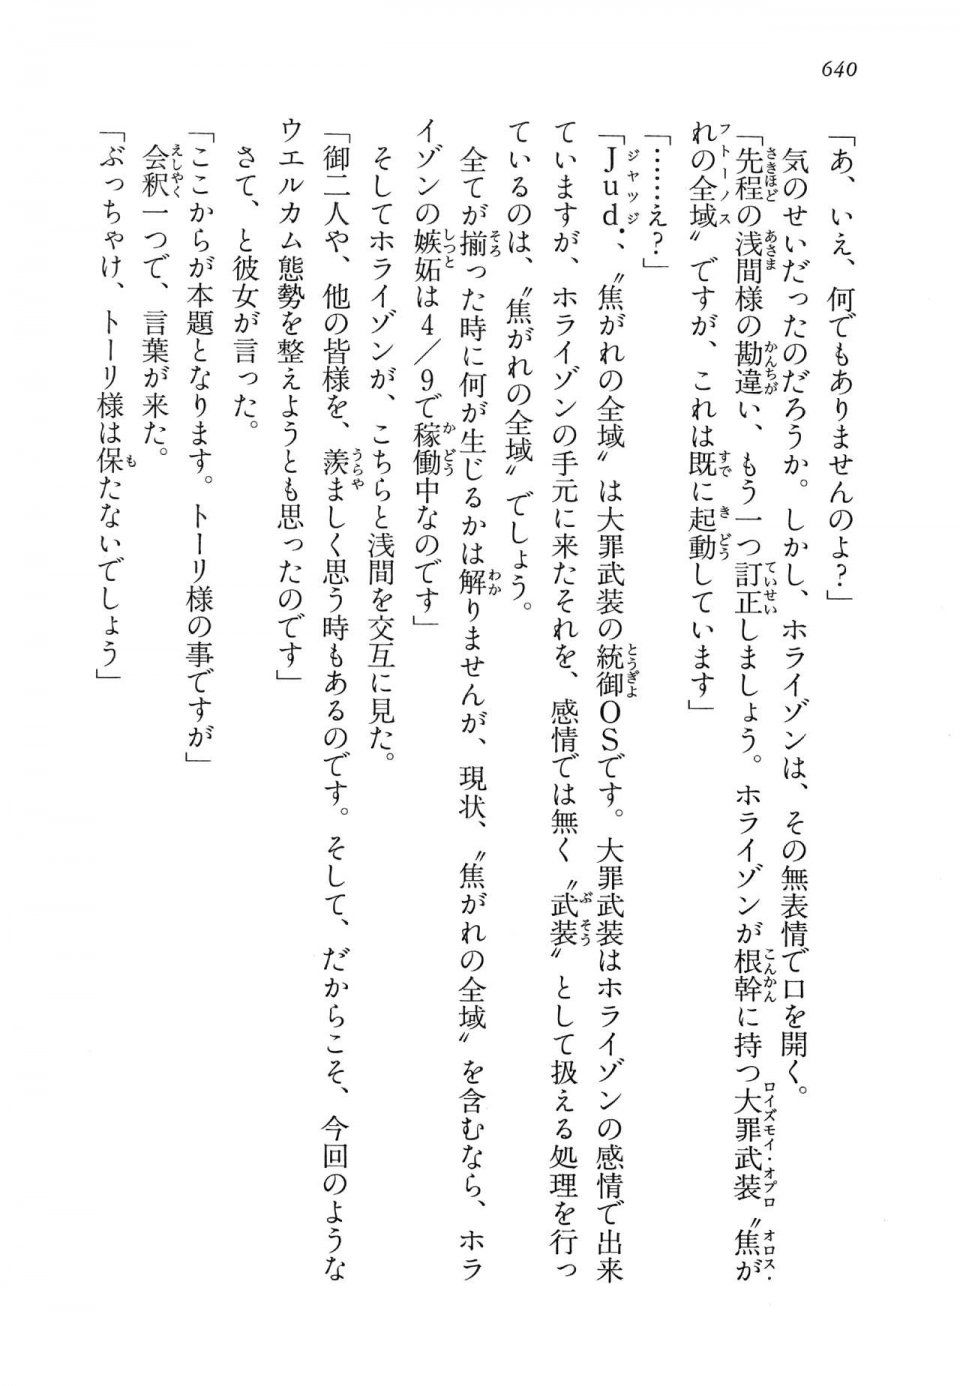 Kyoukai Senjou no Horizon LN Vol 14(6B) - Photo #640